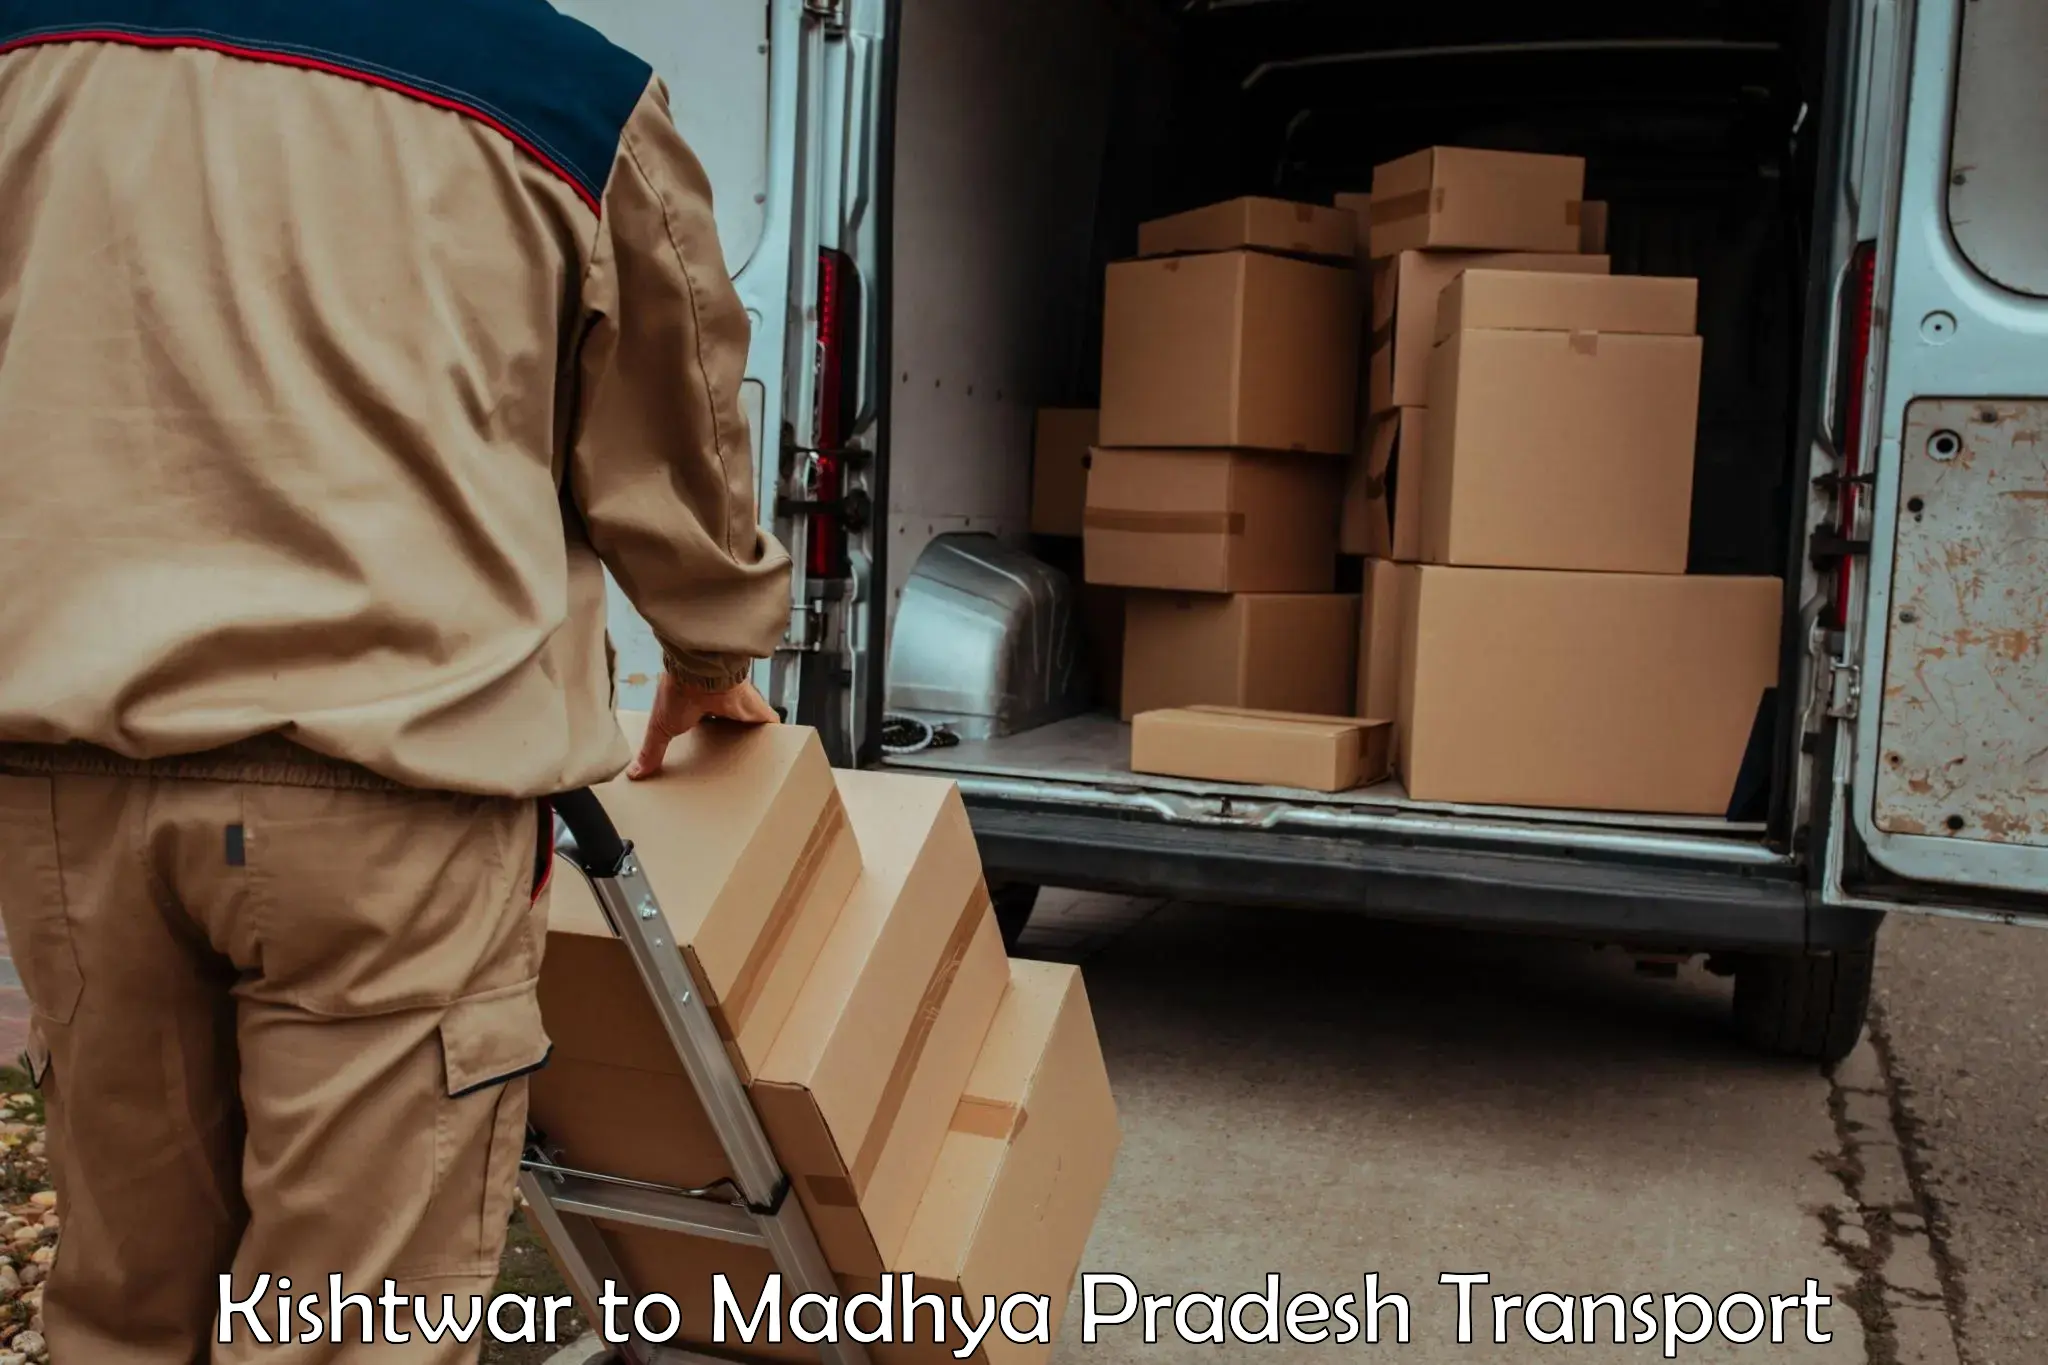 Vehicle transport services in Kishtwar to Garh Rewa